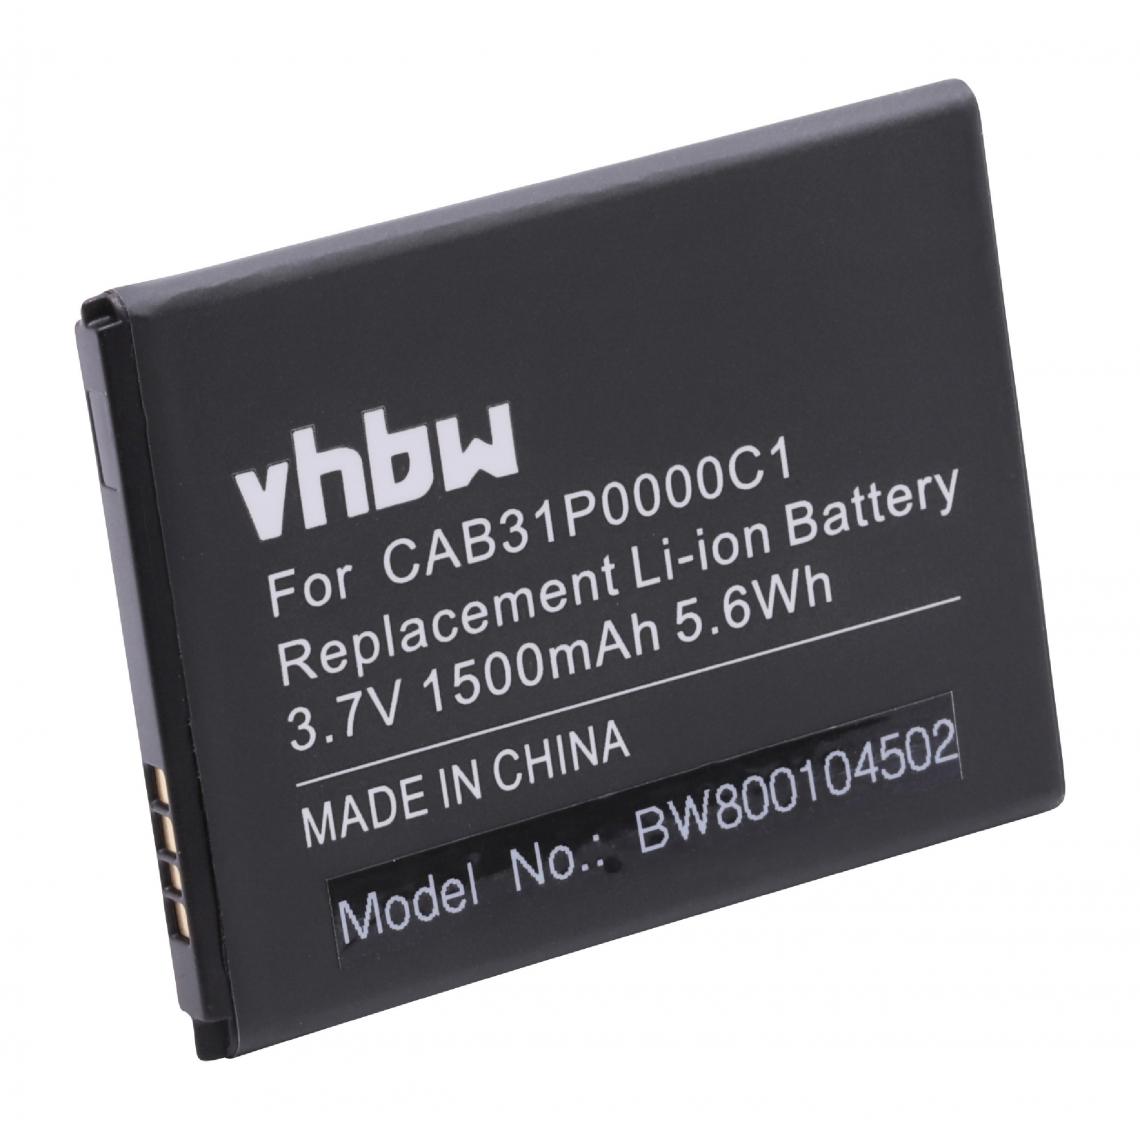 Vhbw - vhbw Li-Ion batterie 1500mAh (3.7V) pour portable Smartphone téléphone Alcatel One Touch Pixi OT-4007, Pop C1 OT-4015D comme BY71, CAB31P0000C1. - Batterie téléphone